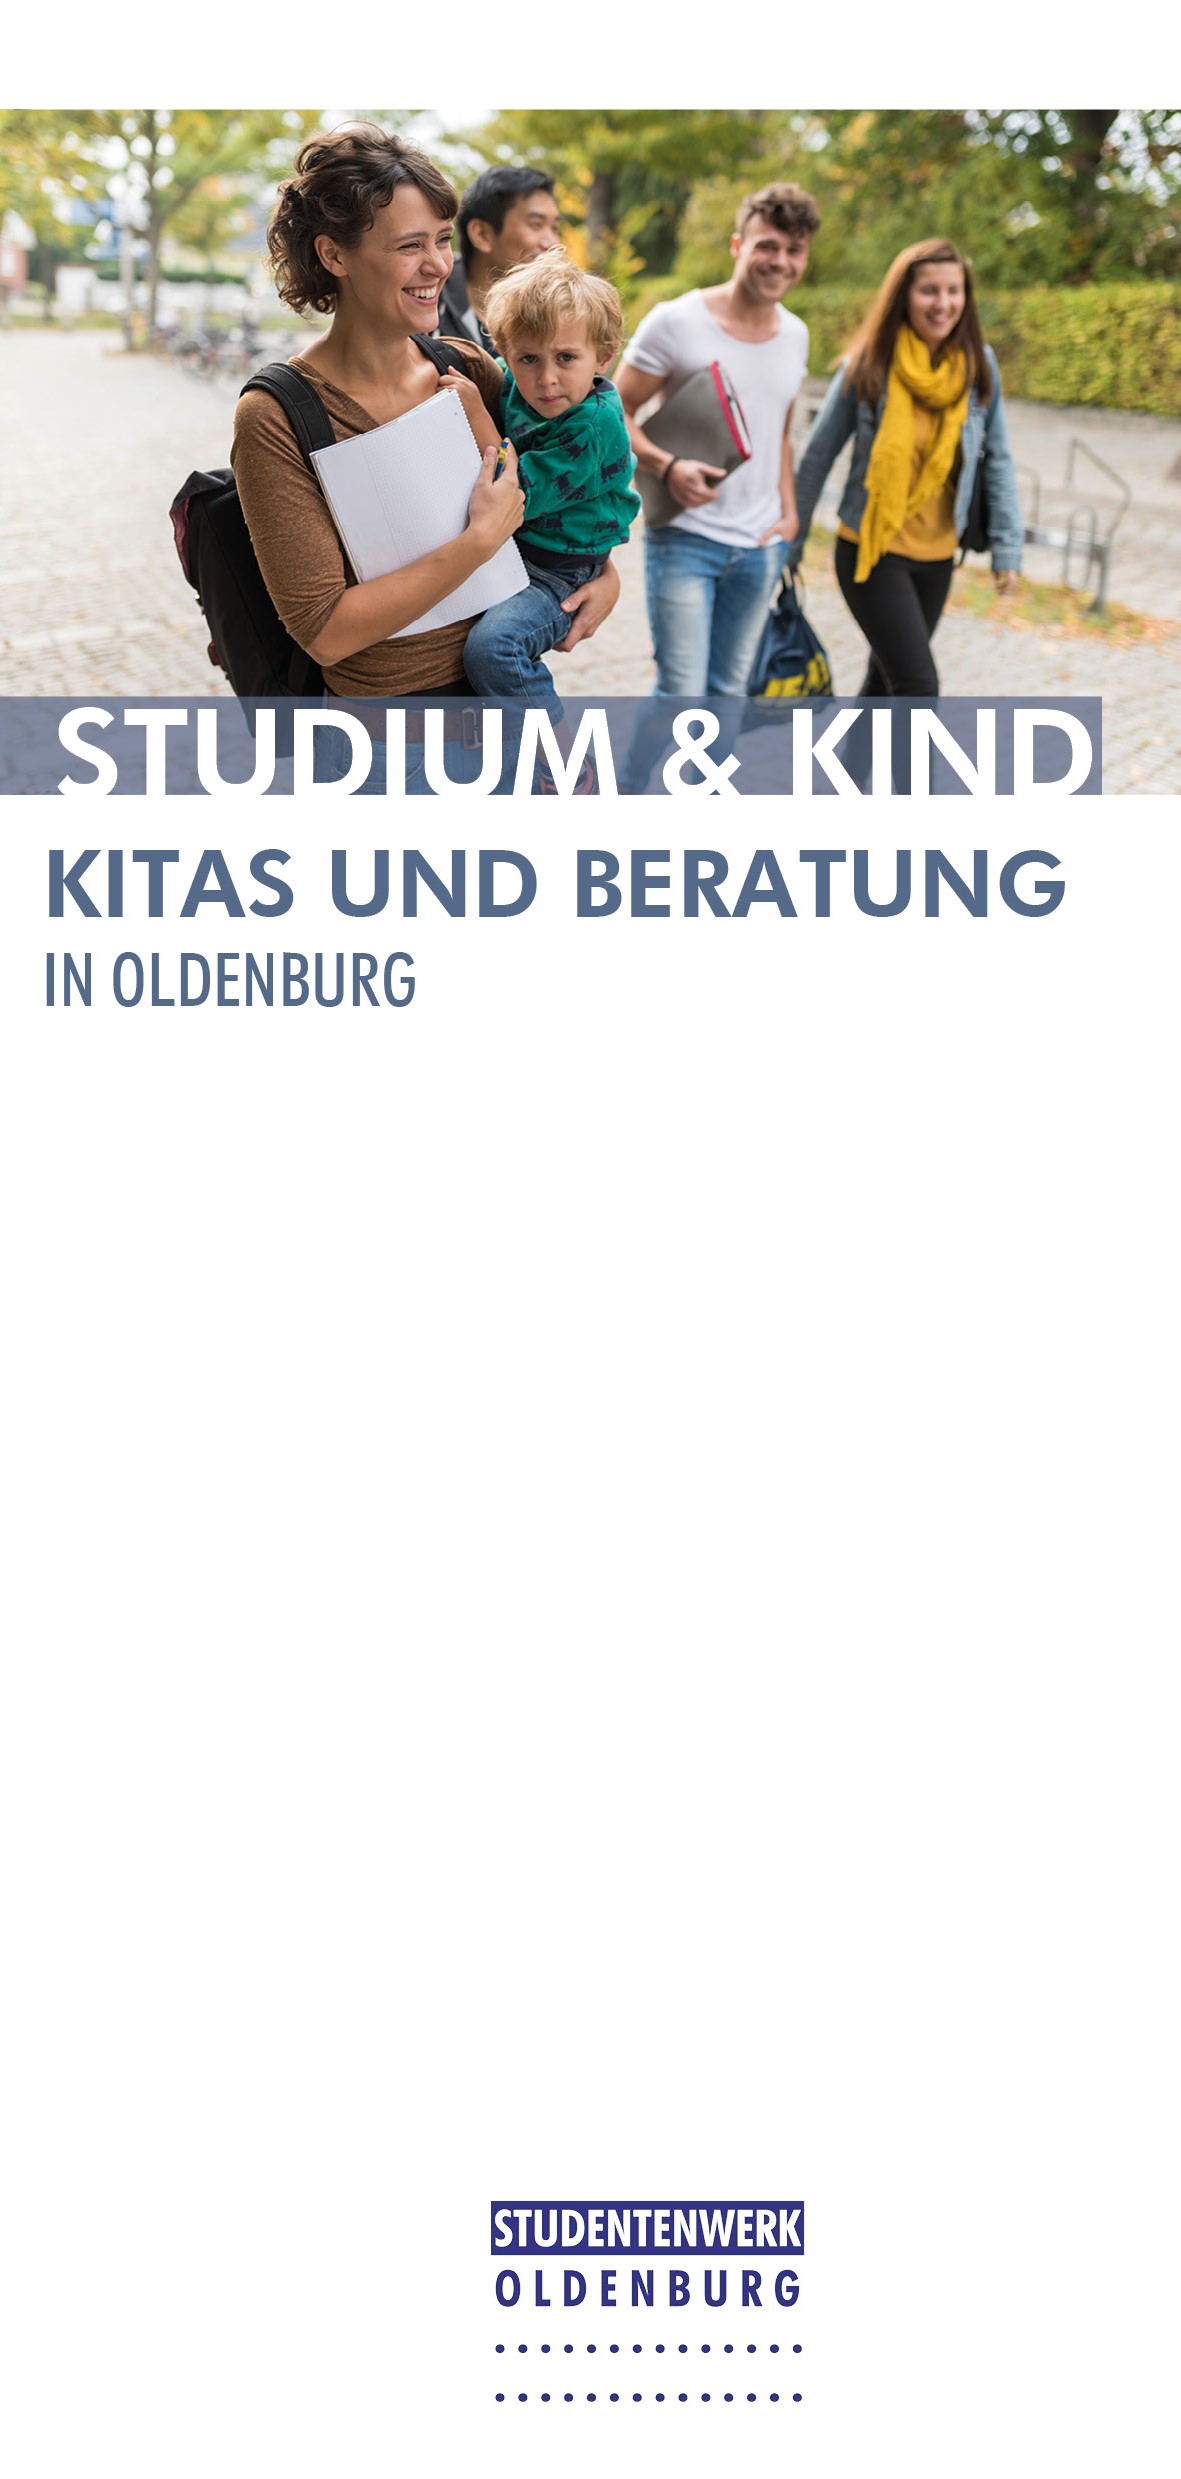 Studium und Kind: Kitas und Beratung in Oldenburg